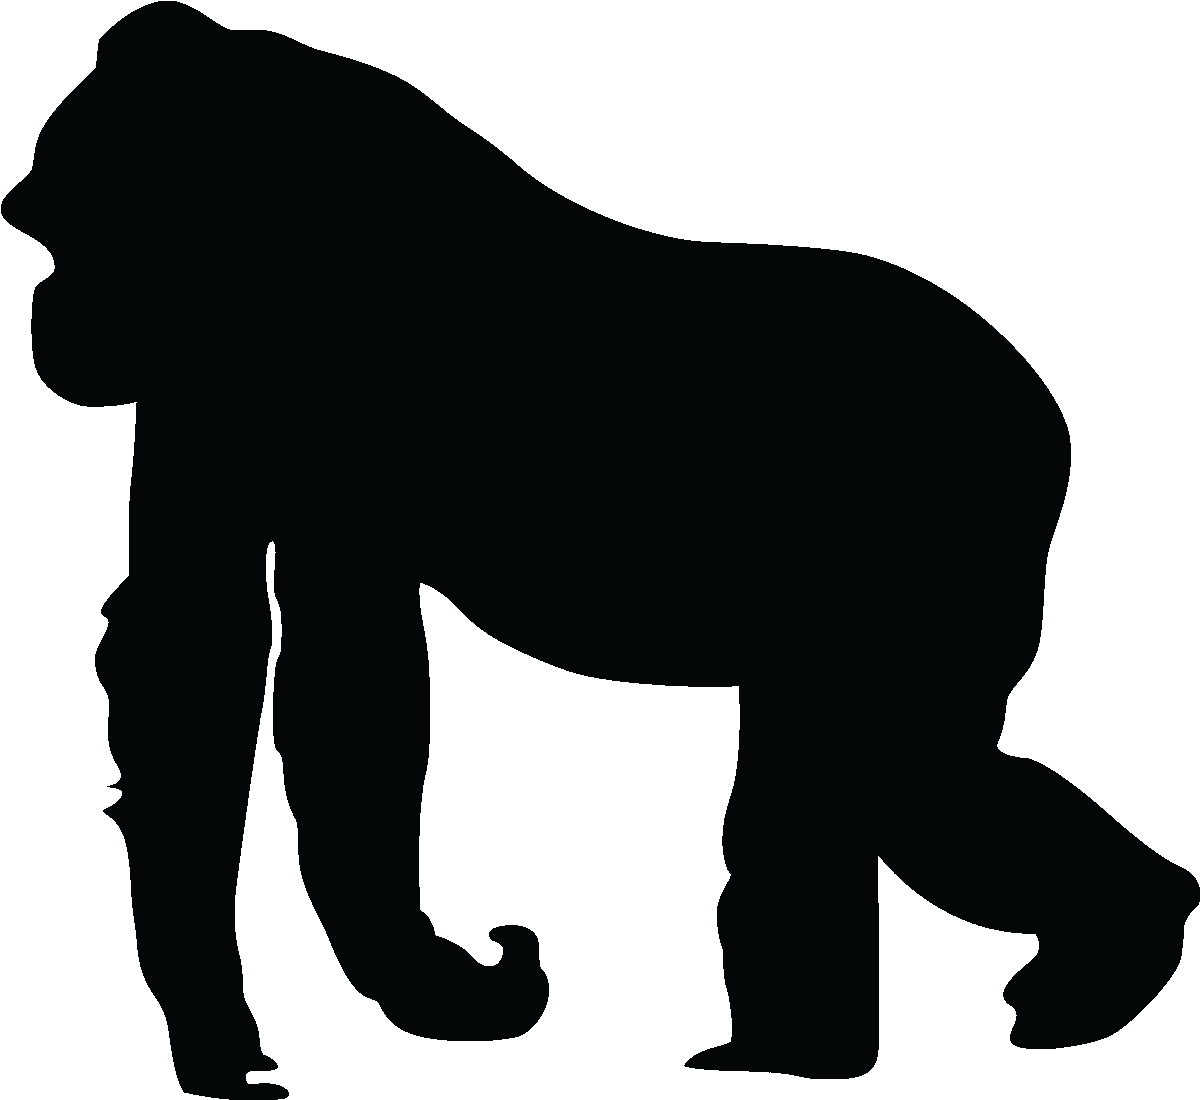 Gorilla Silhouette Silhouette Gorilla Wall Â€¦ Pinteresâ€¦ - Animal Silhouettes (1200x1200)